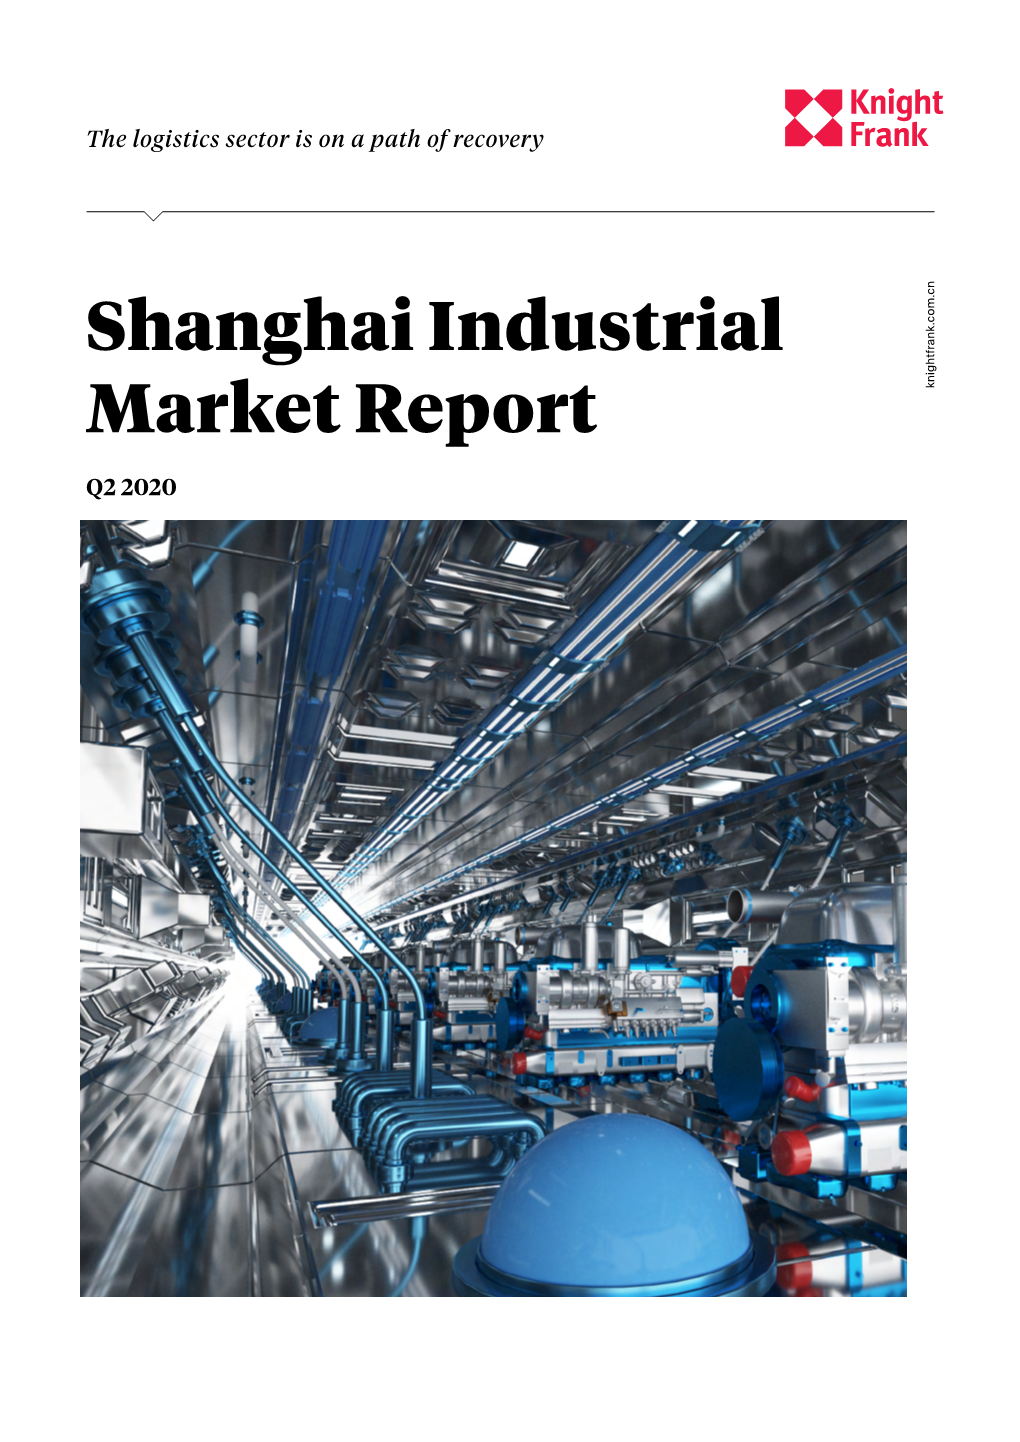 Shanghai Industrial Market Report Q2 2020